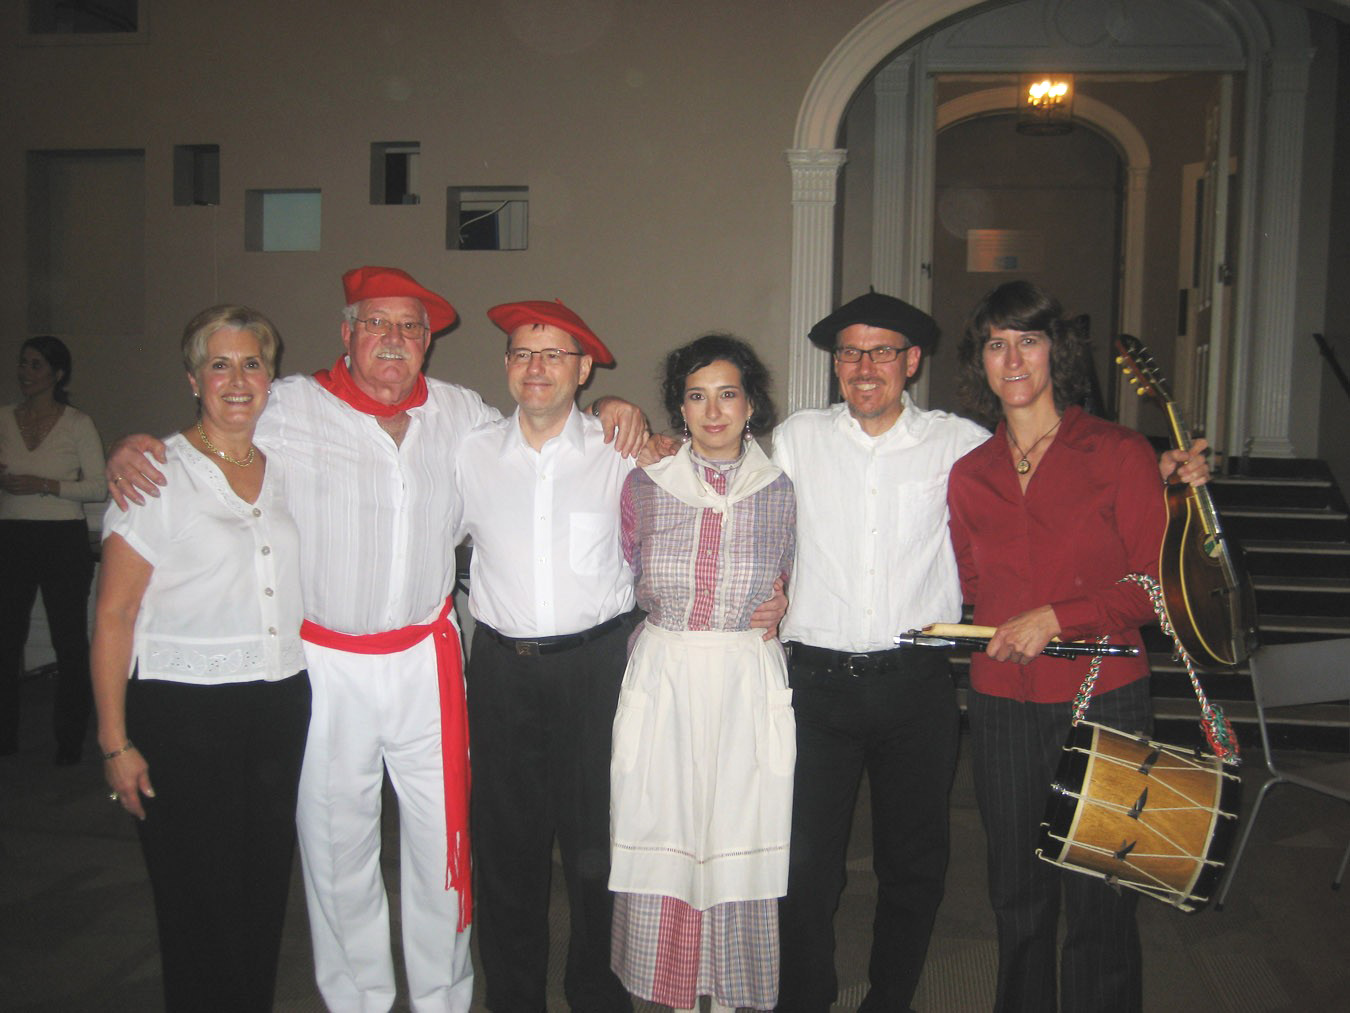 El equipo de la gala, de izquierda a derecha: Marilu Navas, presentadora del acto, el tenor Iñaki Astondoa, el pianista Earl Buys, la soprano Amaia Arberas, el músico John Ehlis y la txistulari Cathy Clarkson (fotos Guillermo Zubiaga)